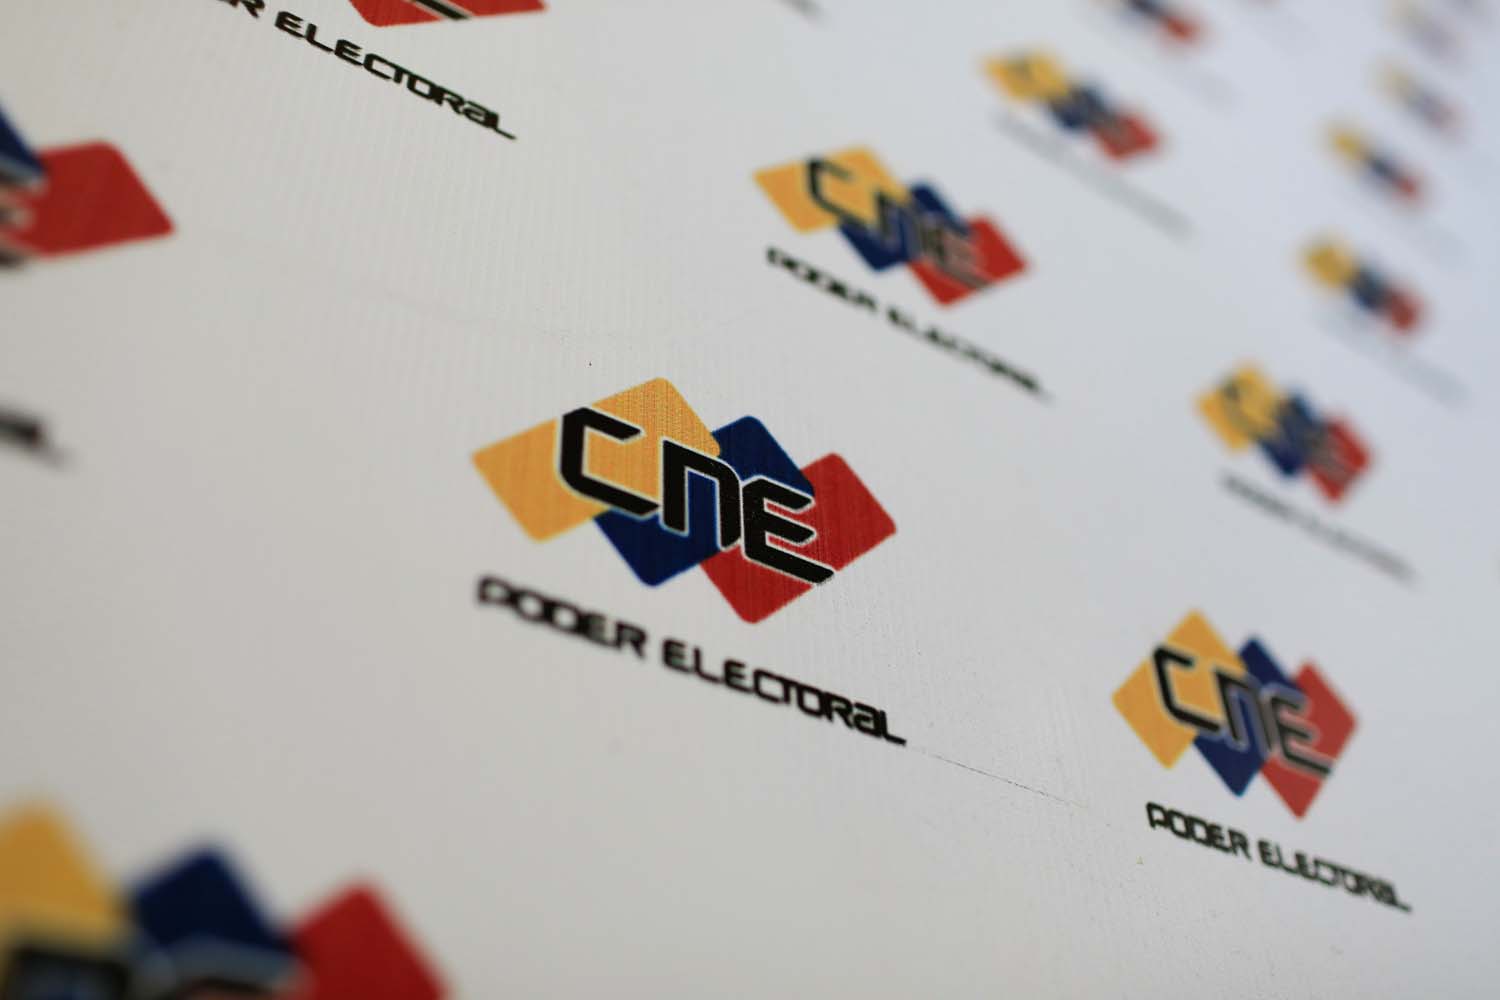 EXTRAOFICIAL: Los 46 candidatos por “lista nacional” que habrían sido premiados por el írrito CNE